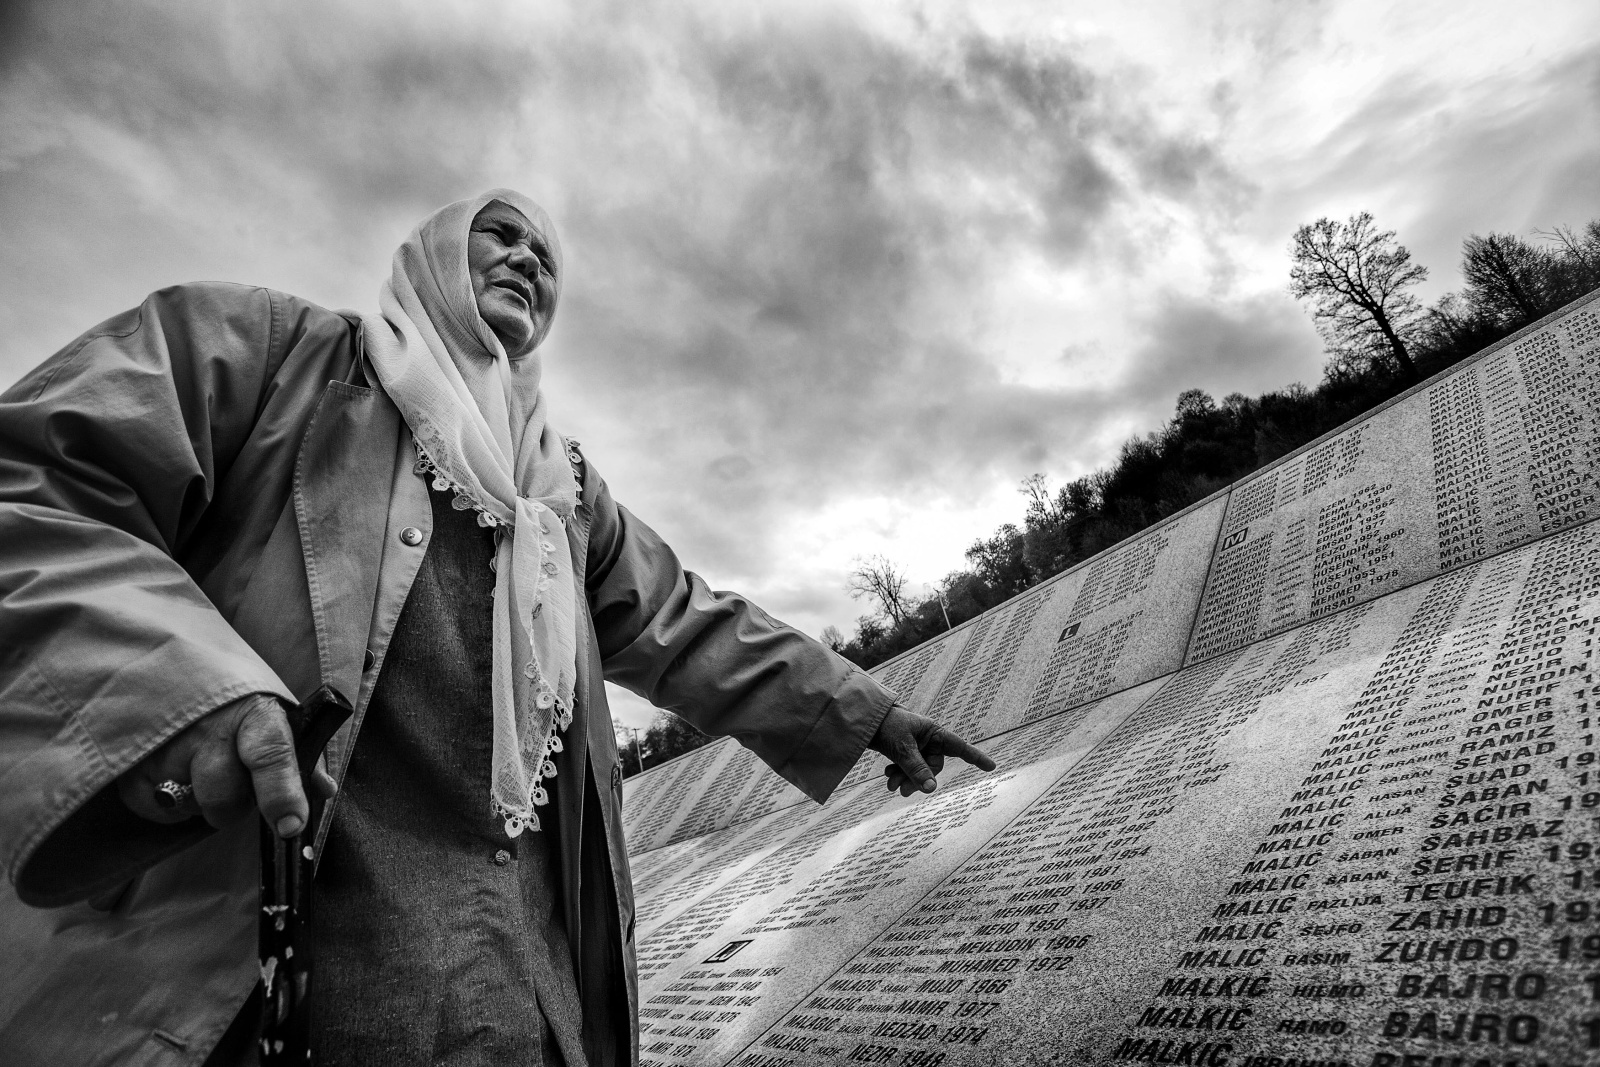 Bosnia - Il memoriale di Potocari dove sono sepolti i musulmani dell'enclave di Srebrenica uccisi dalle truppe paramilitari serbe nel luglio del 1995 
Potocari memorial of the Srebrenica victims